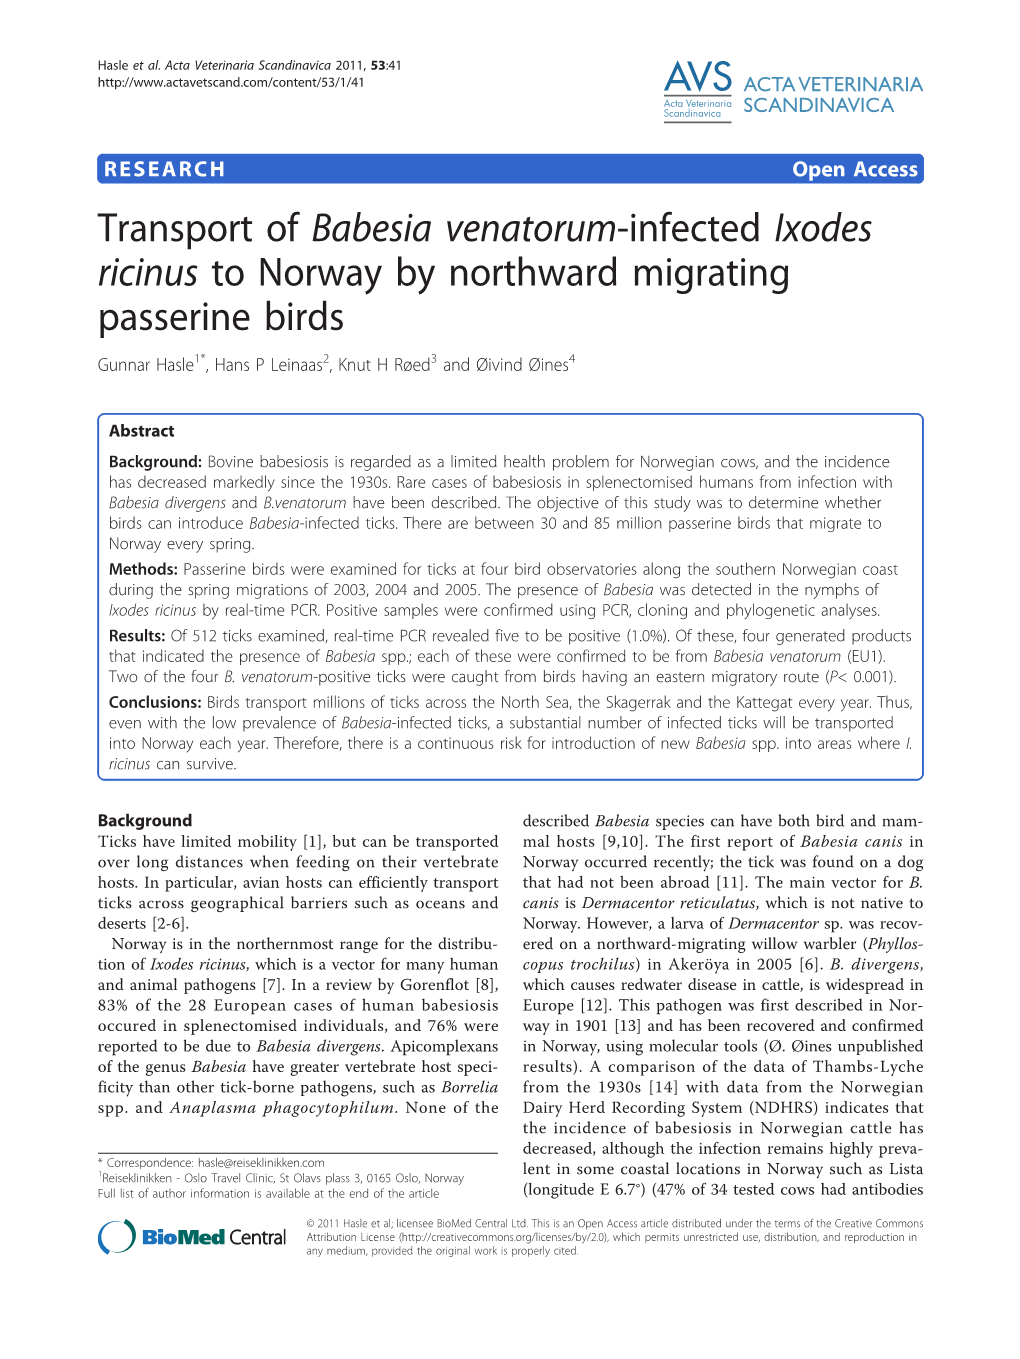 Transport of Babesia Venatorum-Infected Ixodes Ricinus